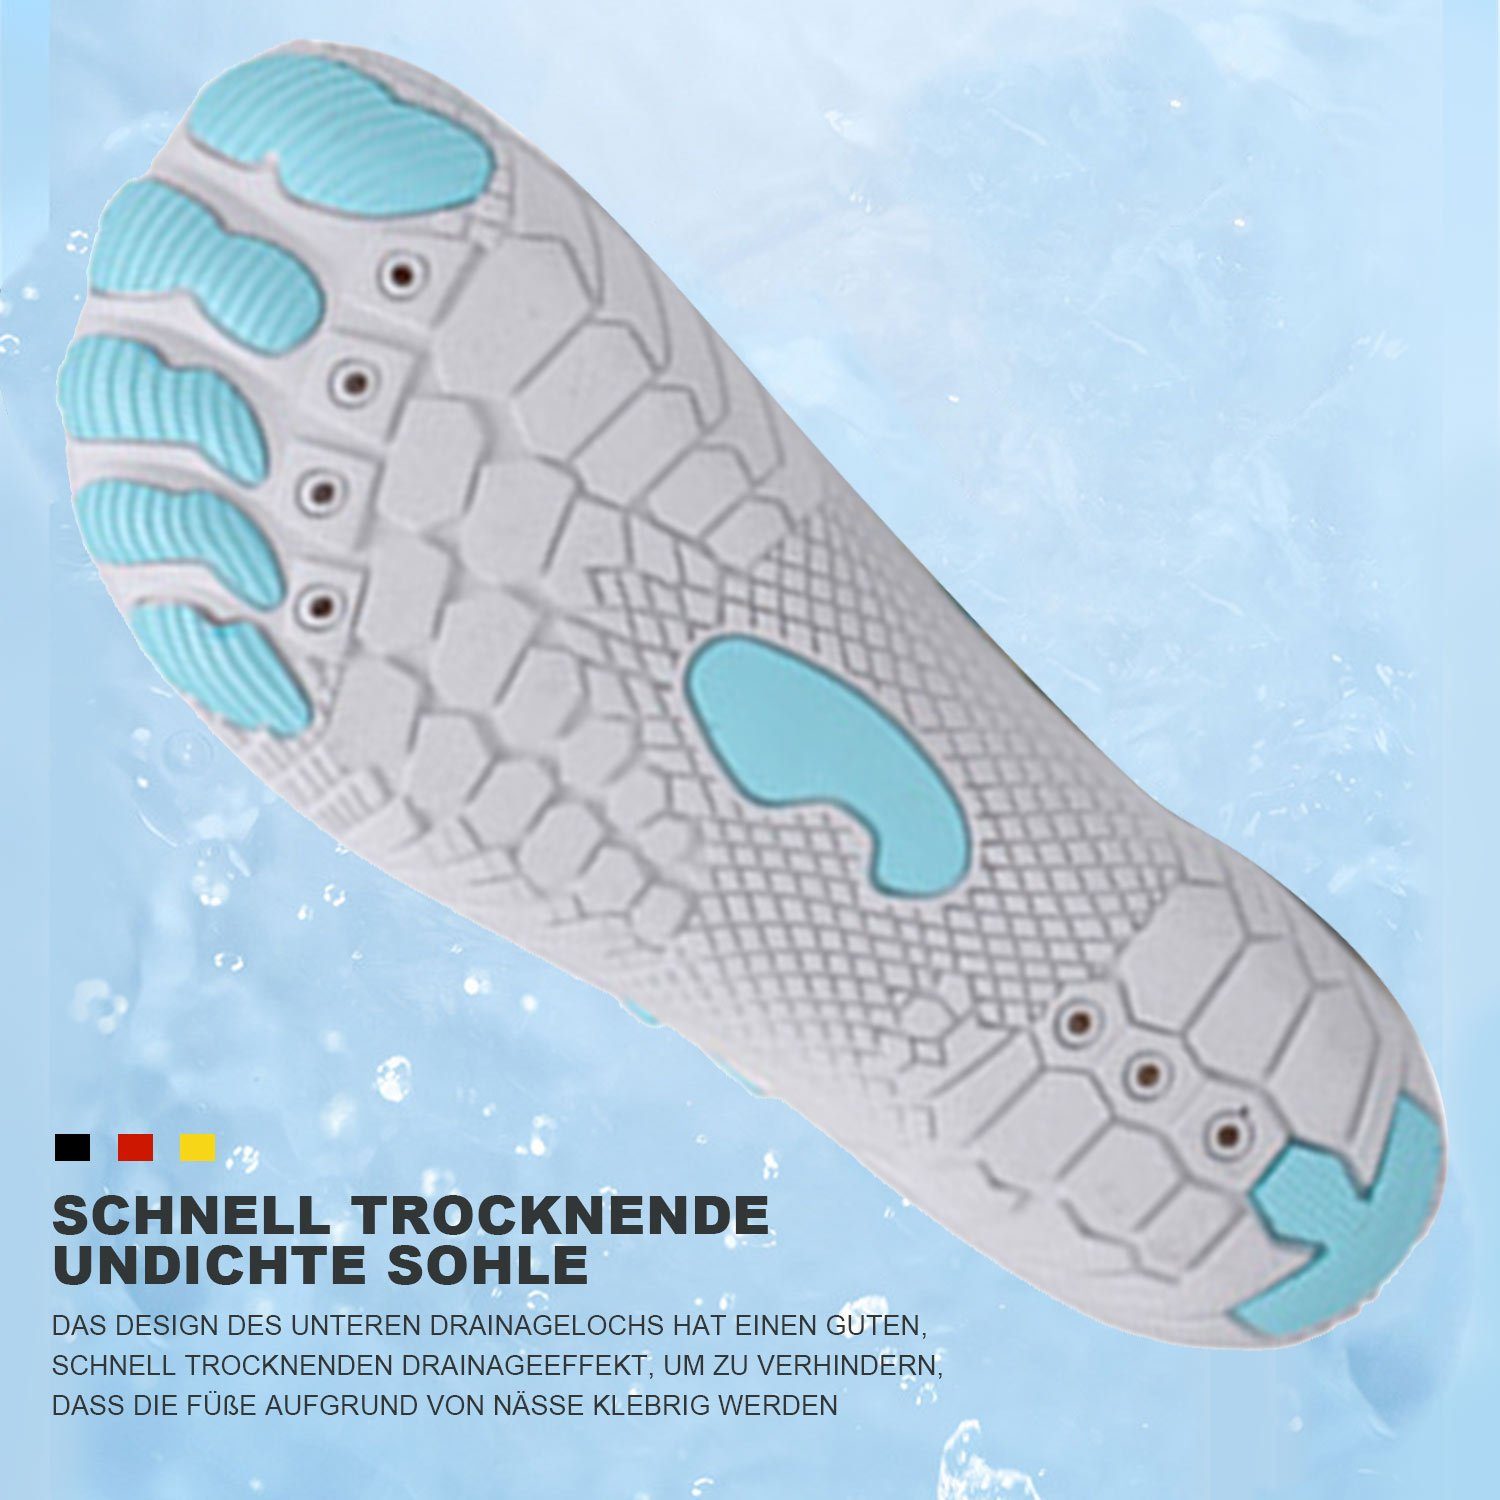 MAGICSHE Neutralschuhe Outdoor Fitnessschuhe Blau Wasserschuhe für Barfußschuh Damen Herren Weiß Trailrunning-Schuhe und